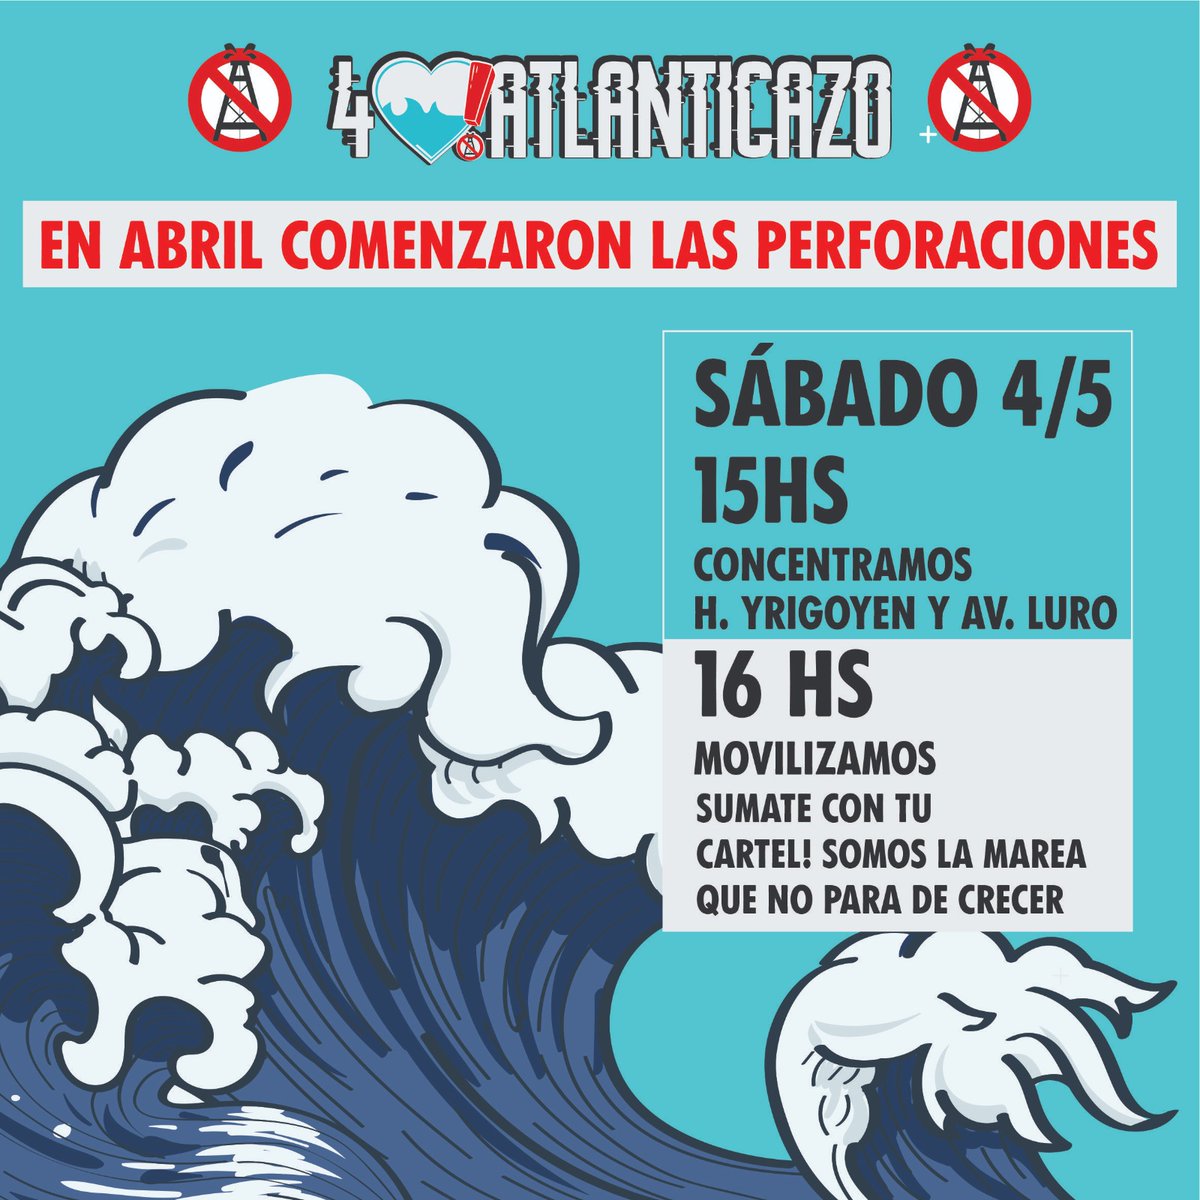 📌 Este #4 de #mayo nos encontramos en Luro e Yrigoyen a las 15hs

🐳 ¡Sumate a defender al Mar de la explotacion petrolera! +